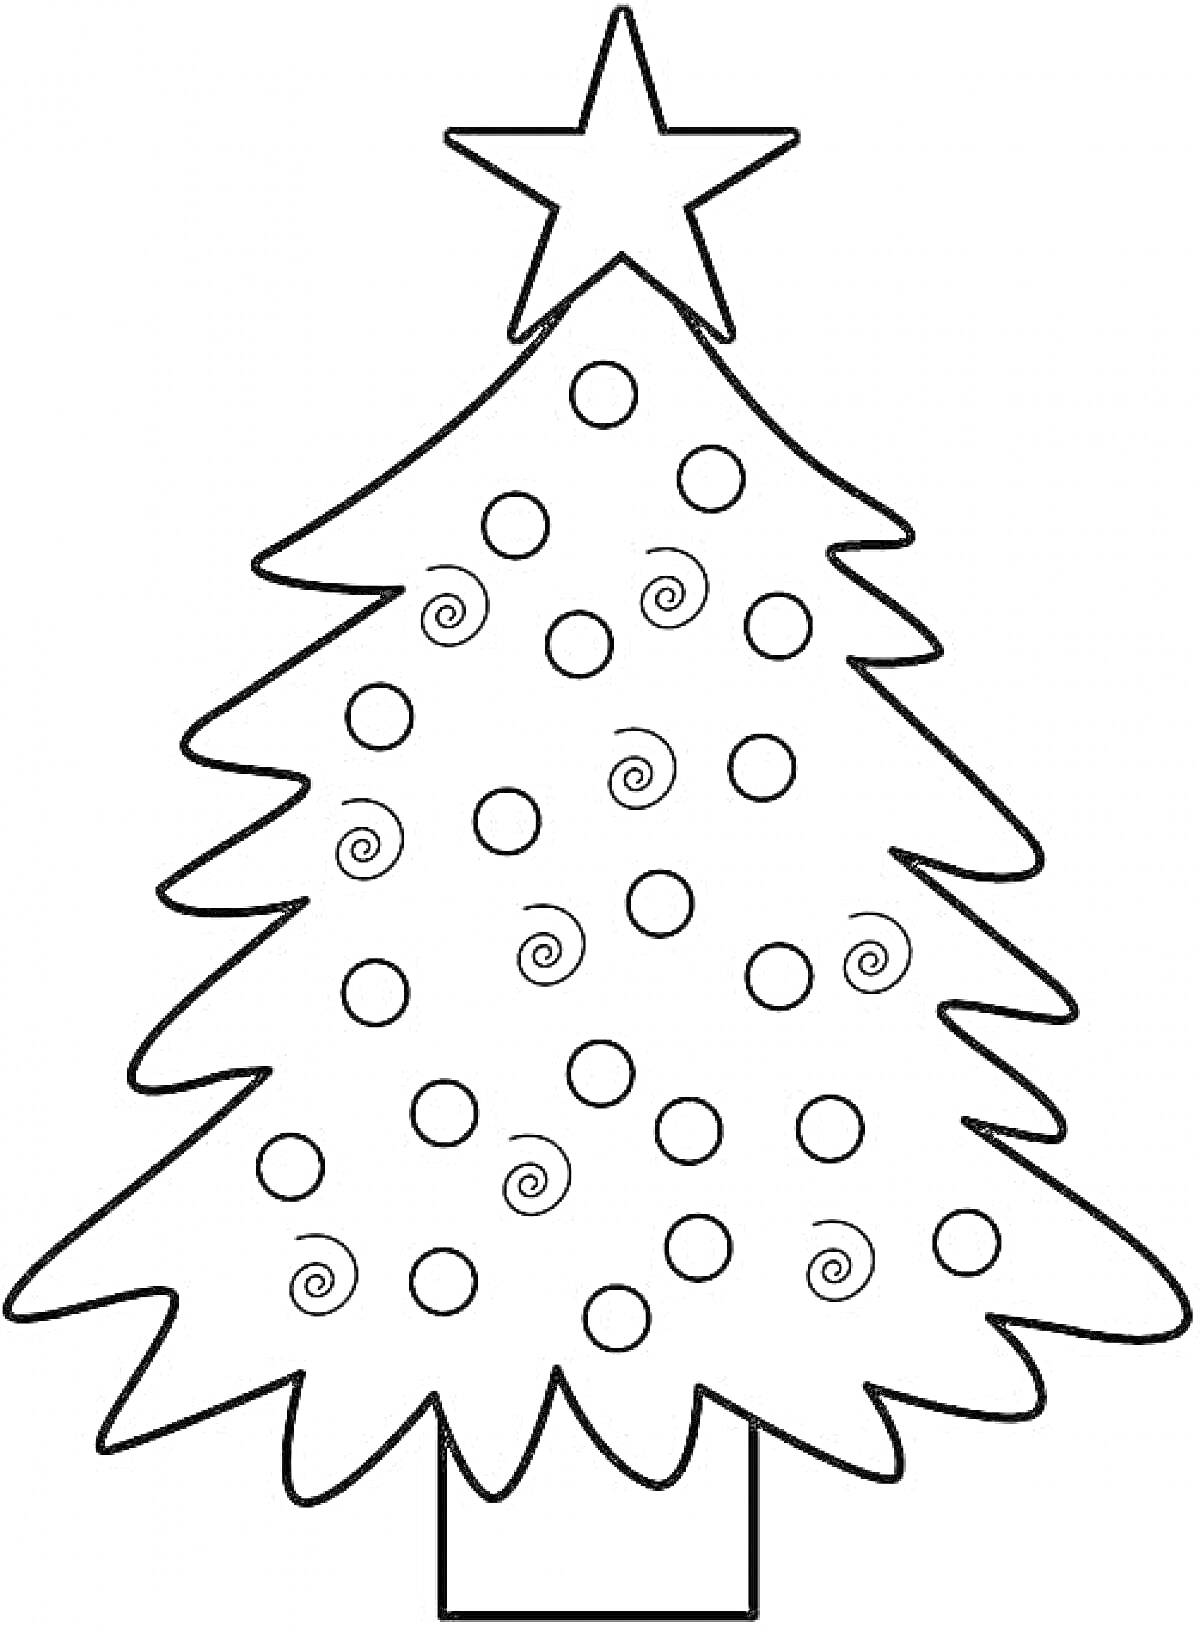 рождественская елка со звездой наверху и узором из кружочков и спиралей